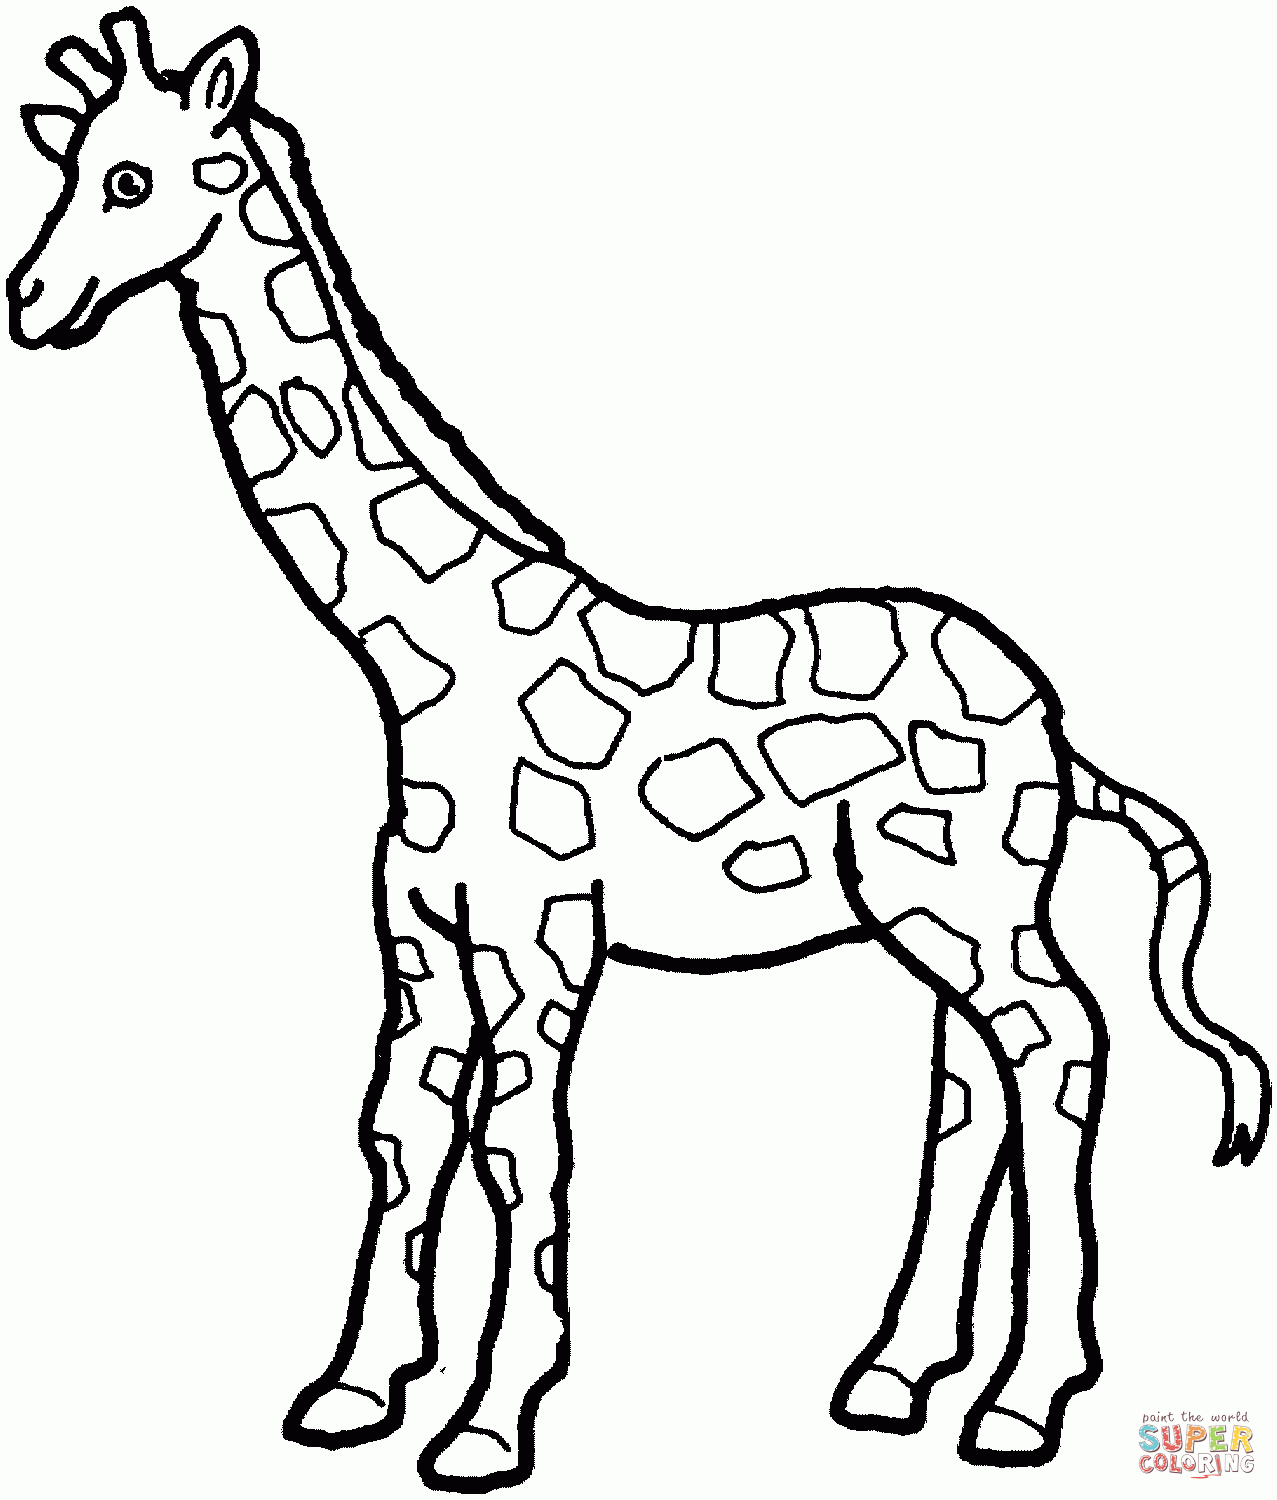 Ausmalbilder Giraffen - Malvorlagen Kostenlos Zum Ausdrucken verwandt mit Giraffe Ausmalbild